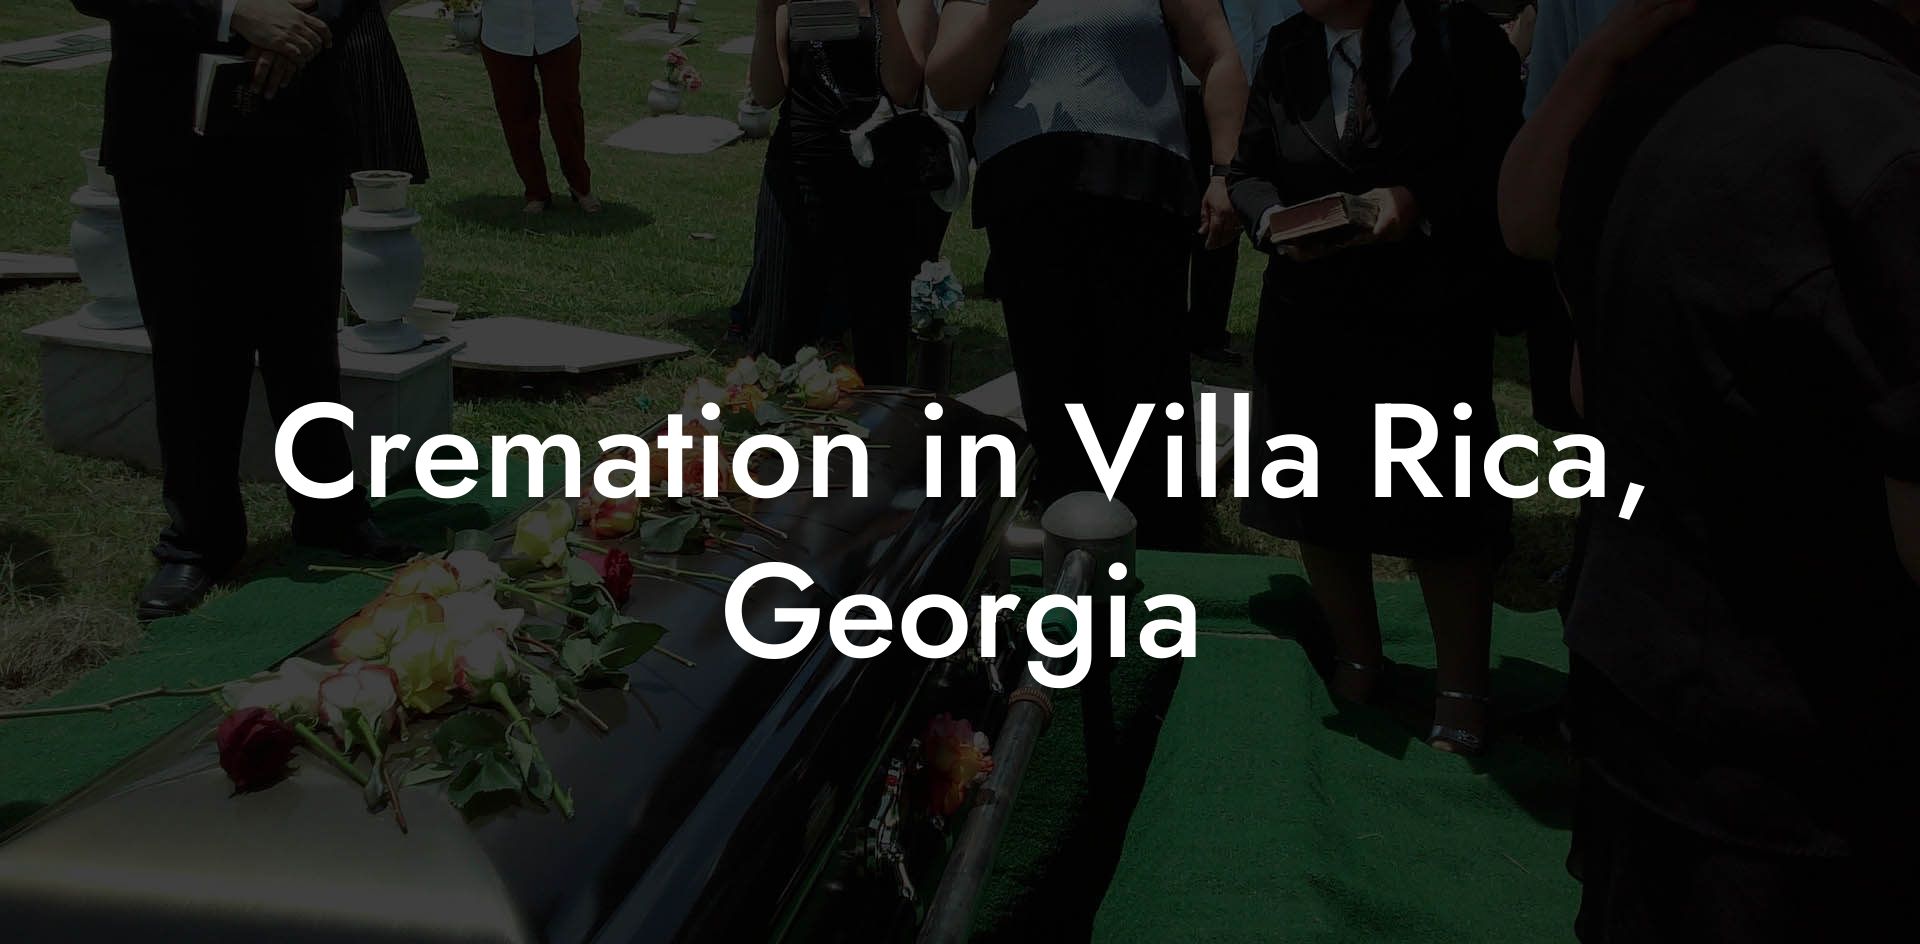 Cremation in Villa Rica, Georgia